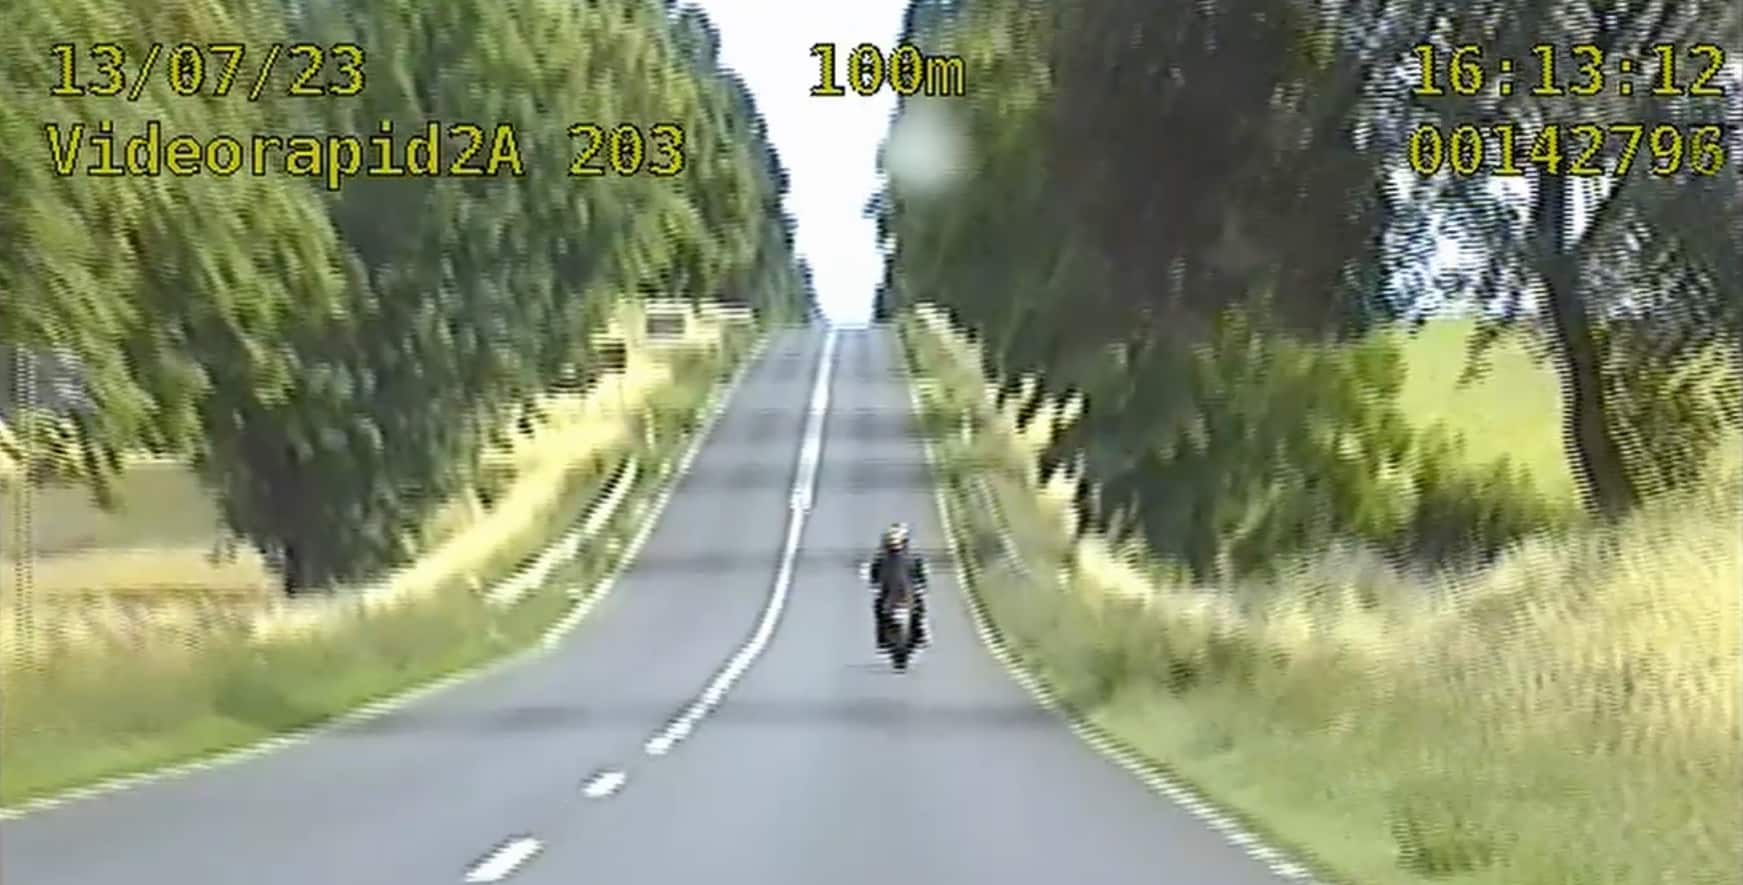 Motocyklista pędził z 6-letnim pasażerem 154 km/h. Publikujemy nagranie Na sygnale Wiadomości, Olsztyn